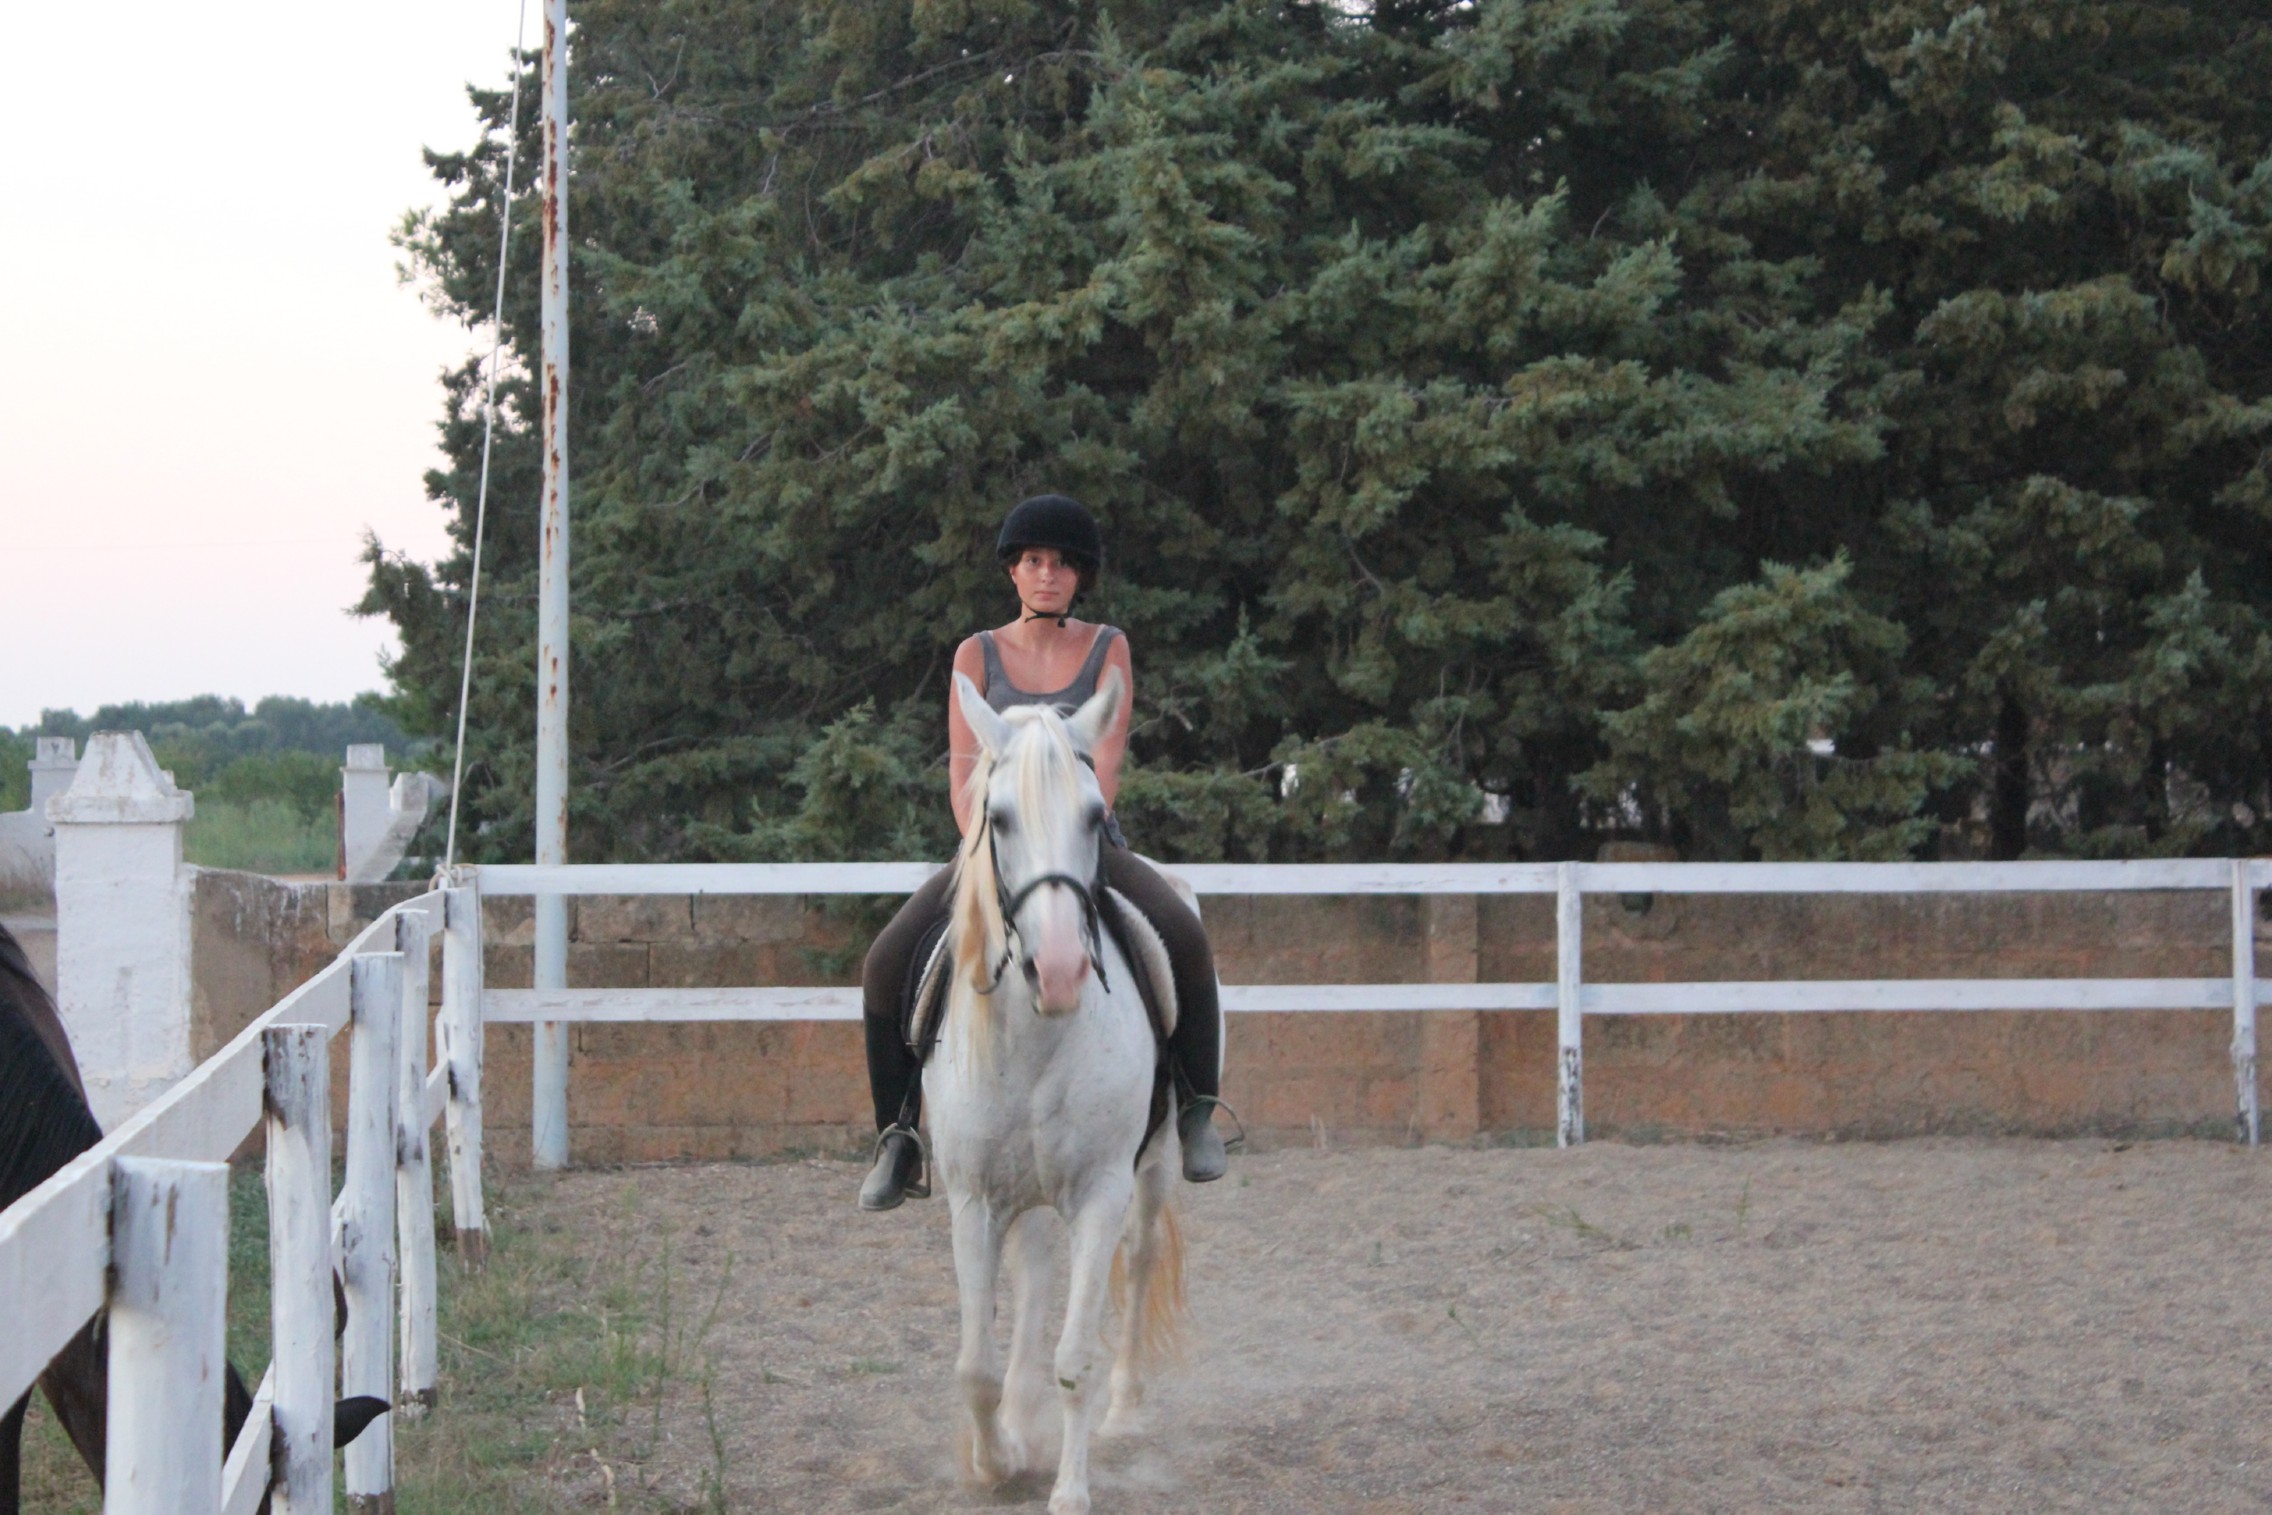 Horse Riding Center